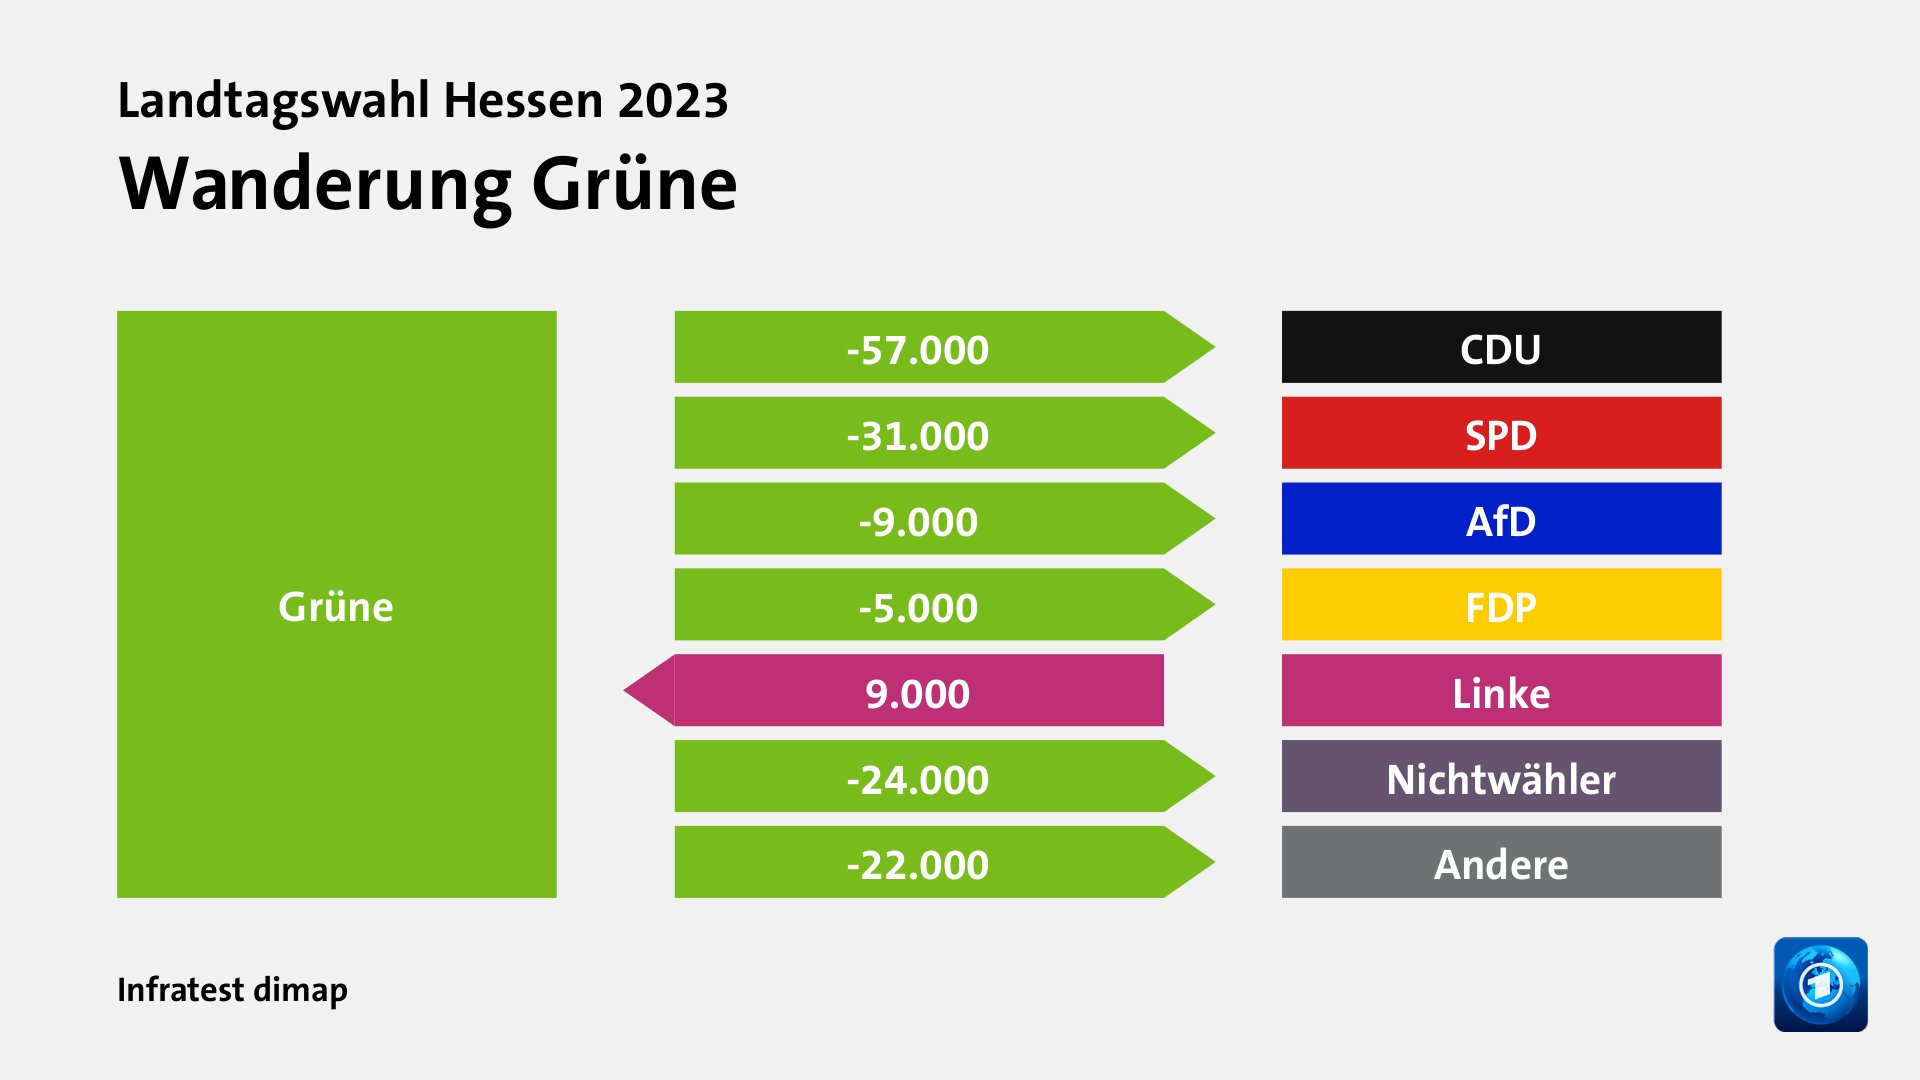 Wanderung Grünezu CDU 57.000 Wähler, zu SPD 31.000 Wähler, zu AfD 9.000 Wähler, zu FDP 5.000 Wähler, von Linke 9.000 Wähler, zu Nichtwähler 24.000 Wähler, zu Andere 22.000 Wähler, Quelle: Infratest dimap